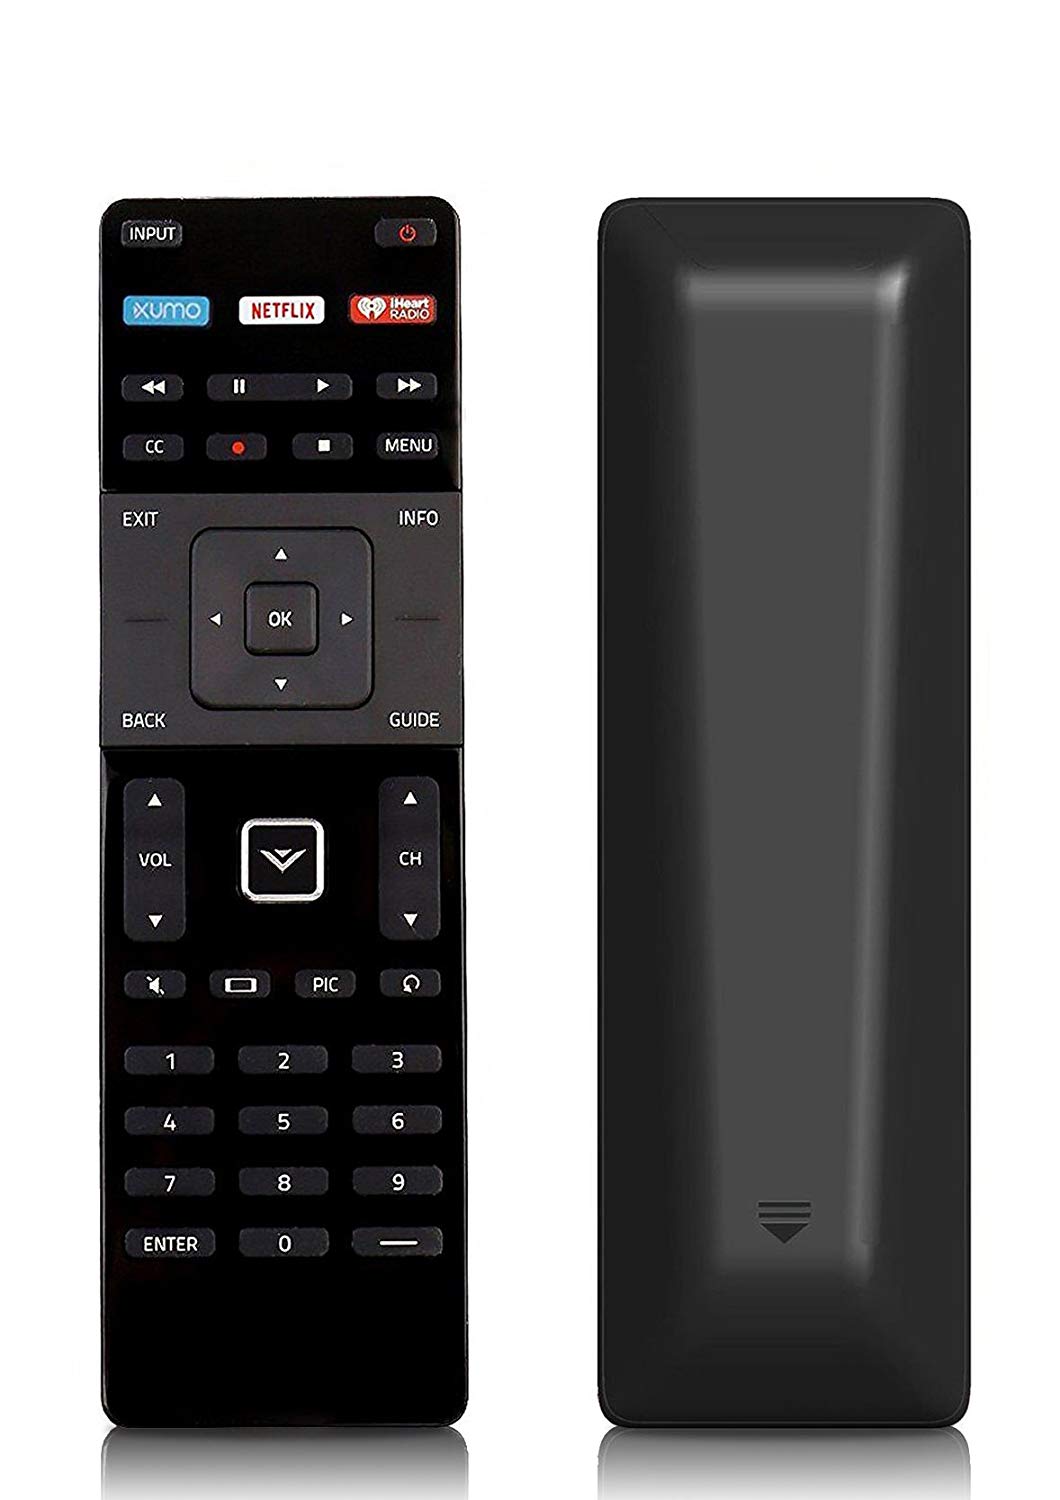 vizio tv remote control